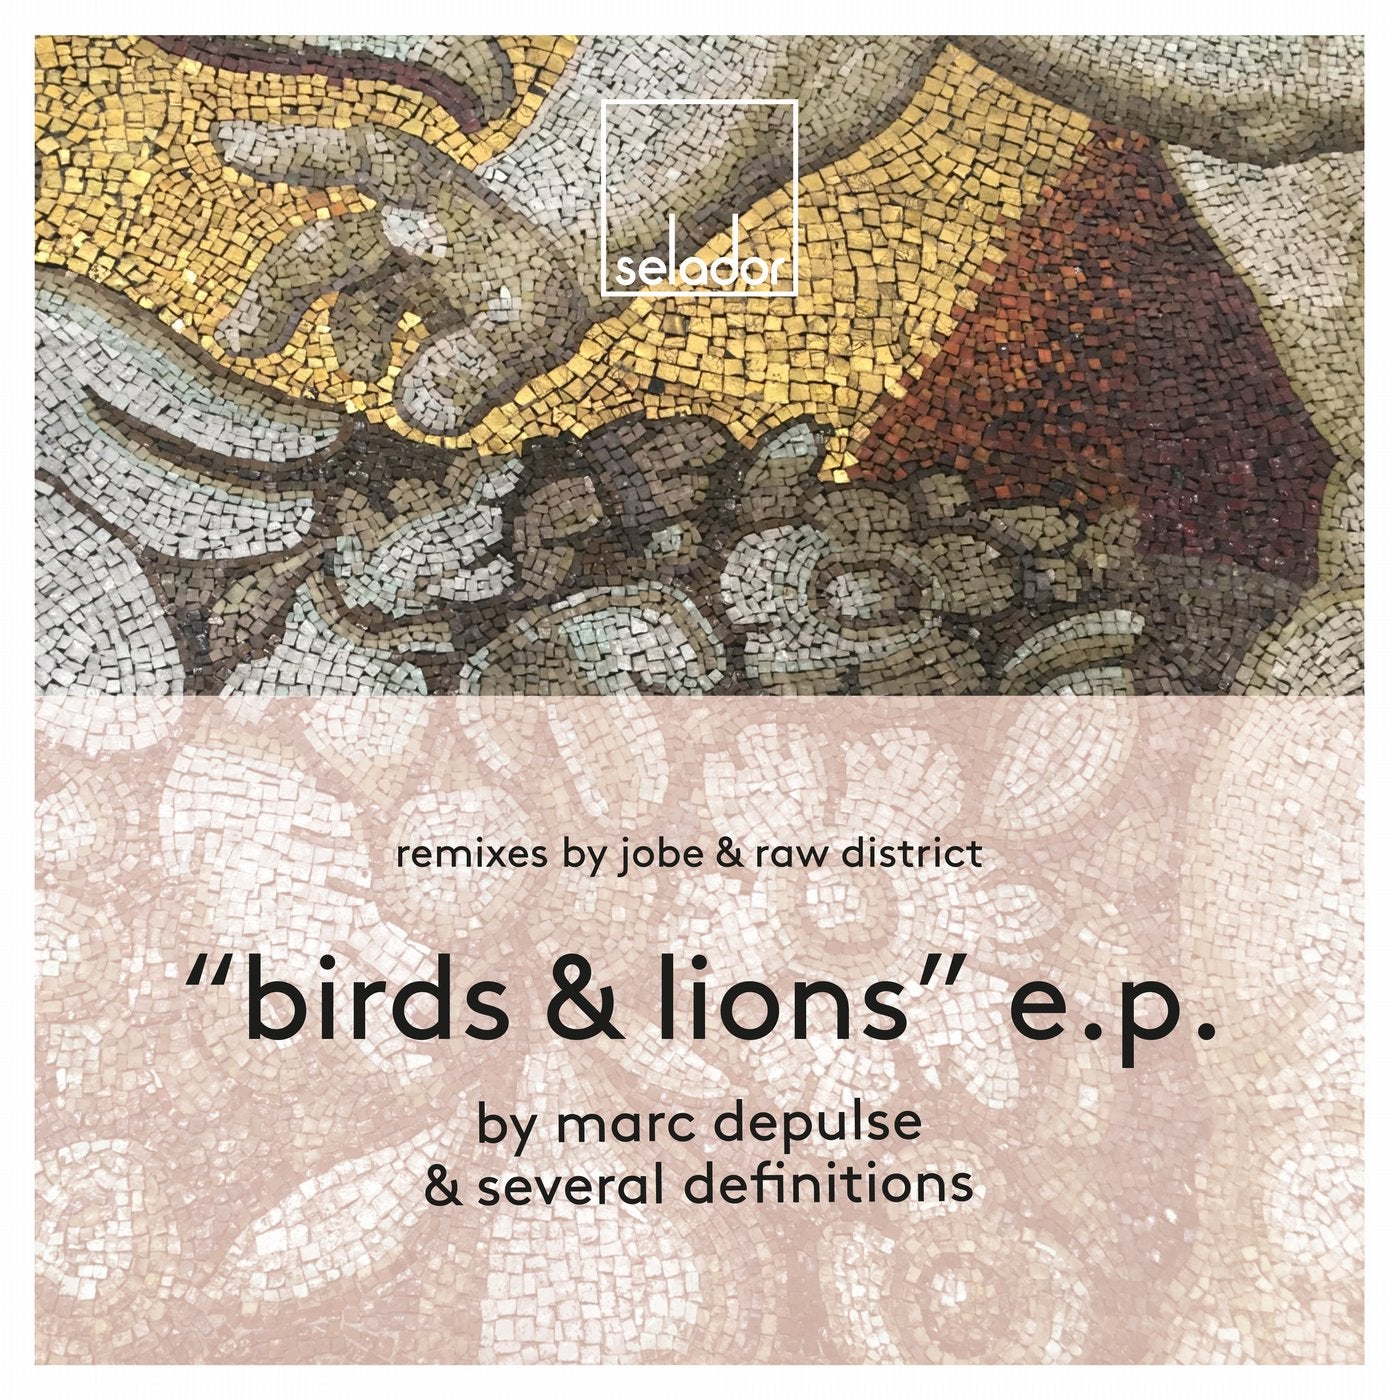 Birds & Lions EP